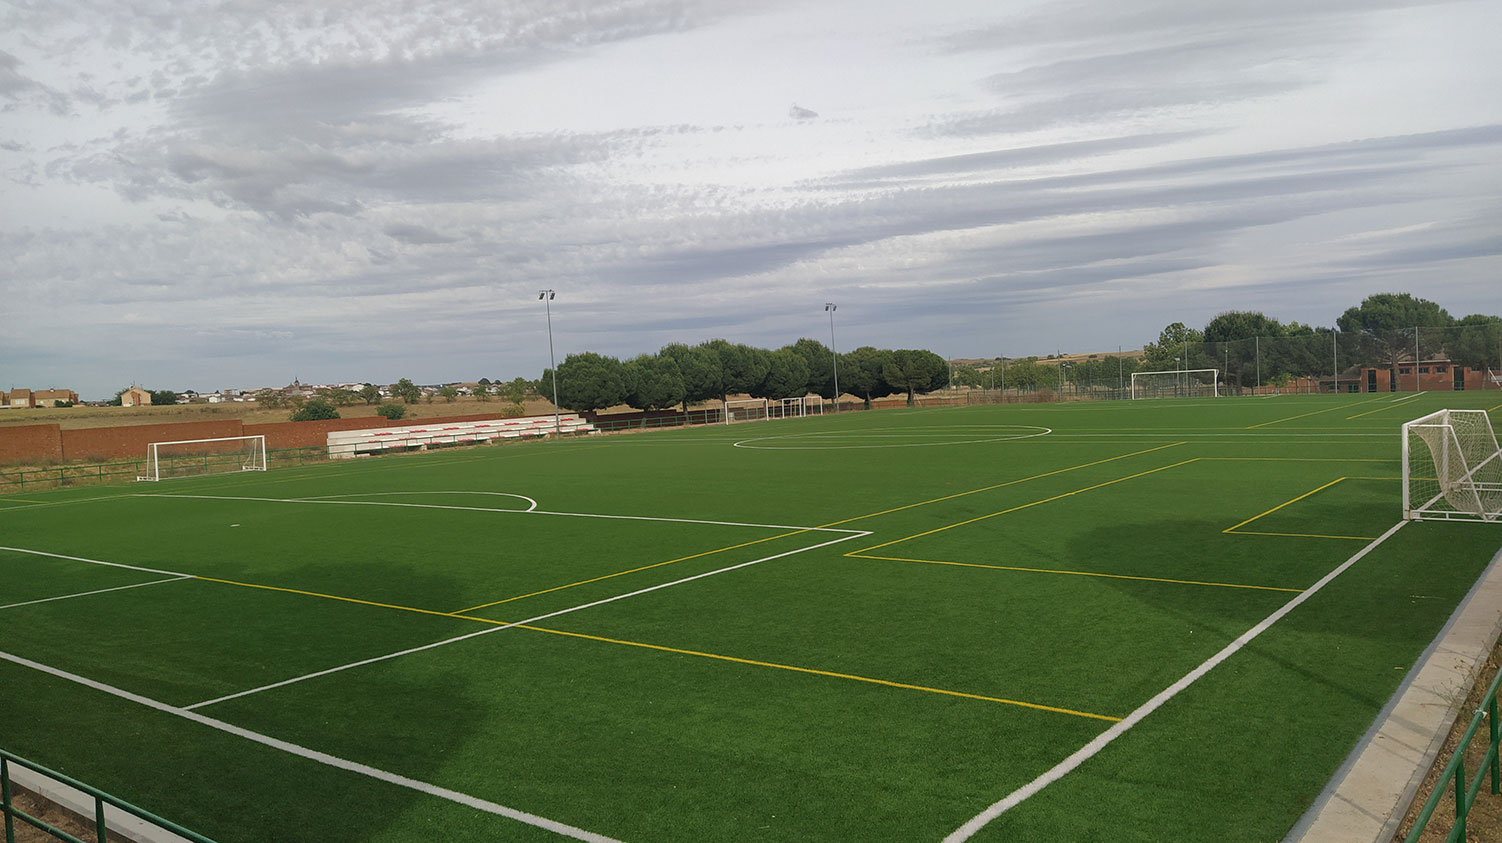 Instalaciones - Complejo Deportivo Municipal - Campo de Fútbol Retamar - Concejalía de Deportes del Ayuntamiento de Santa Cruz del Retamar